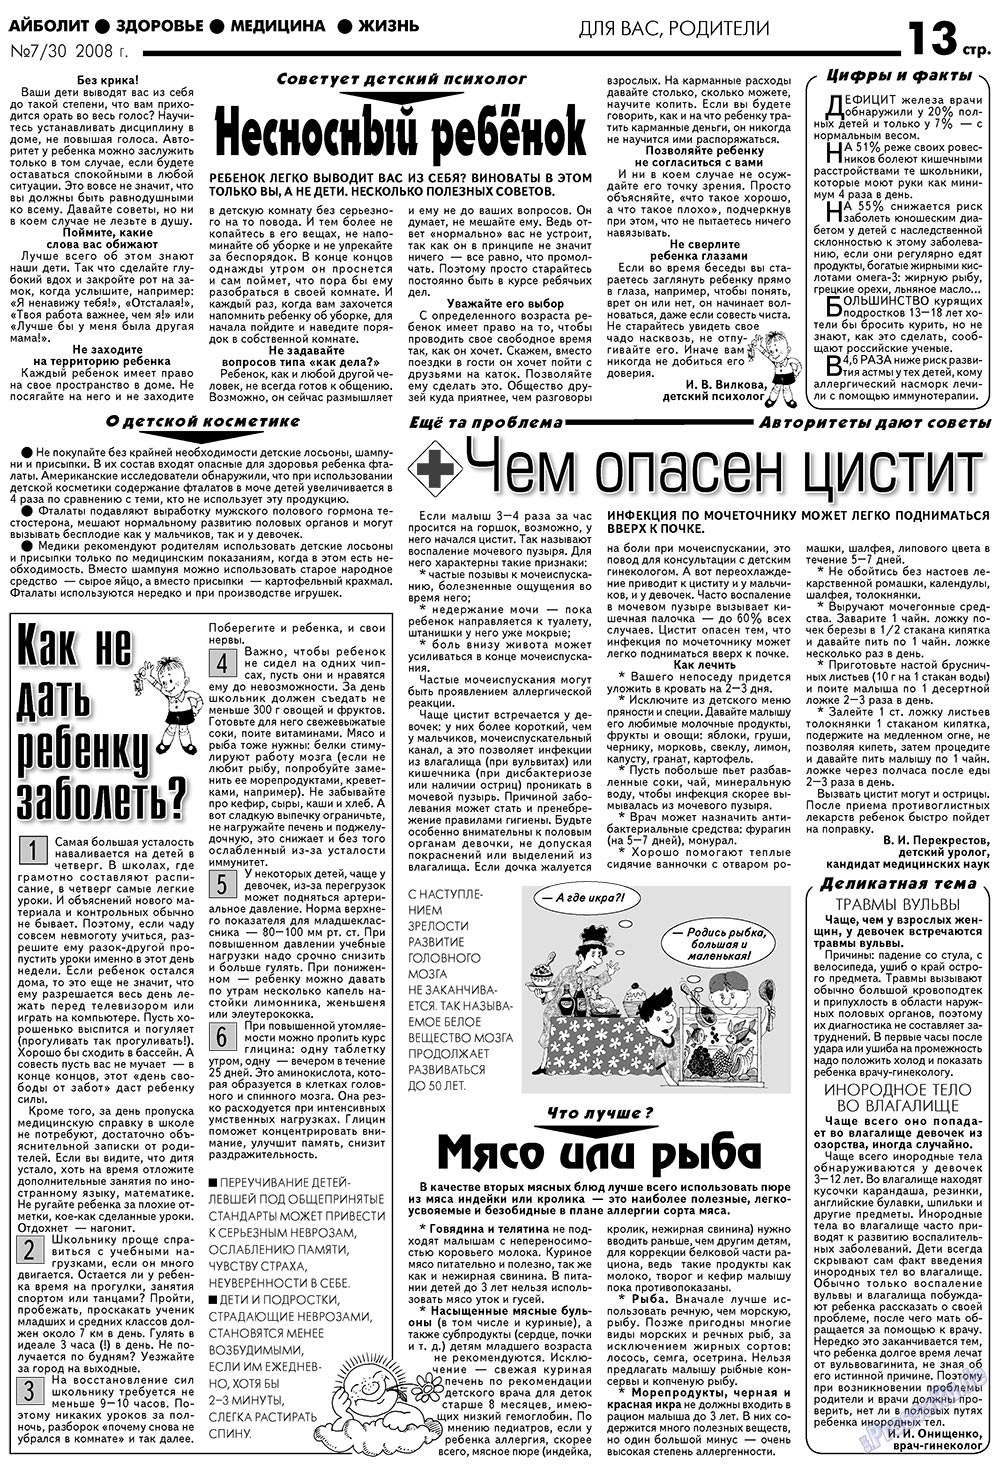 АйБолит, газета. 2008 №7 стр.13